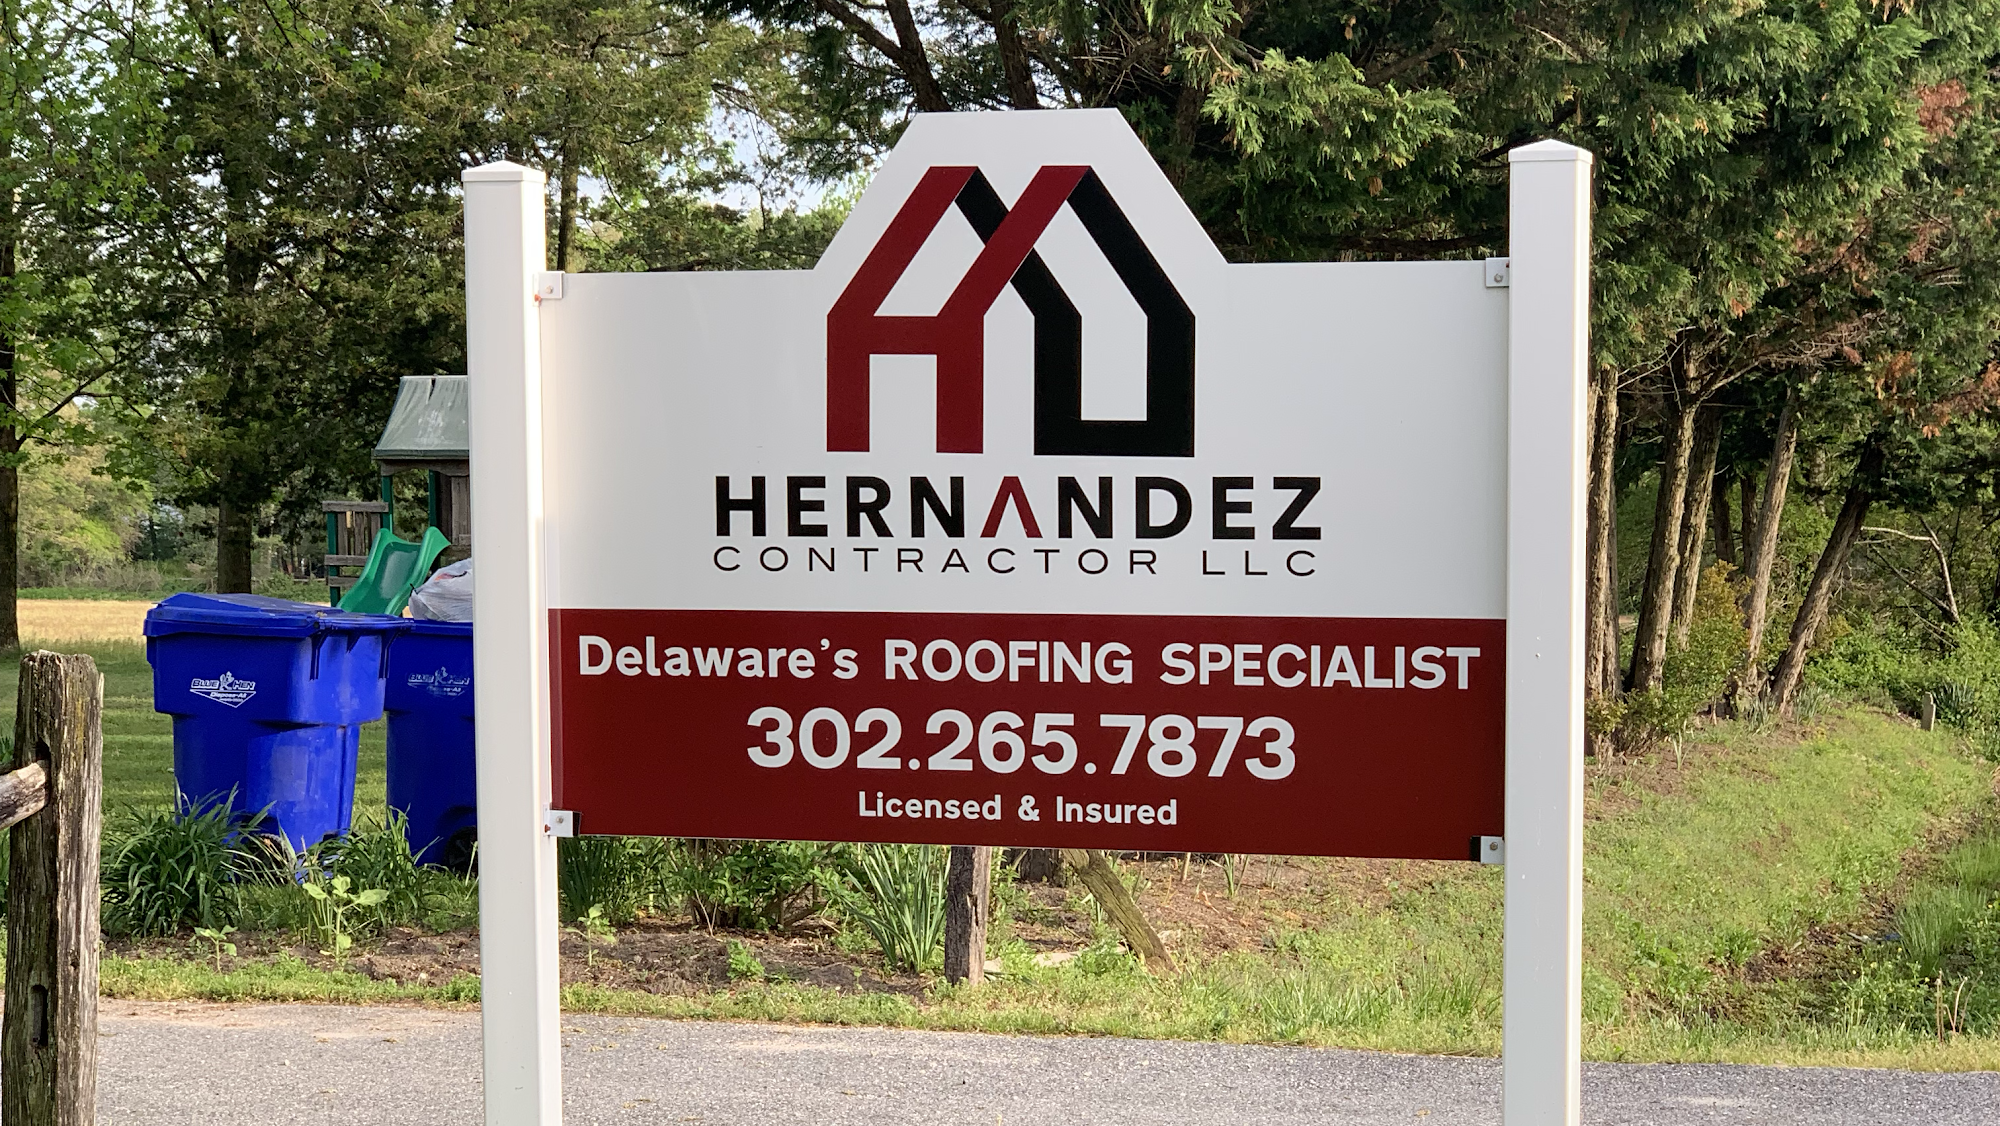 Hernandez Contractor LLC